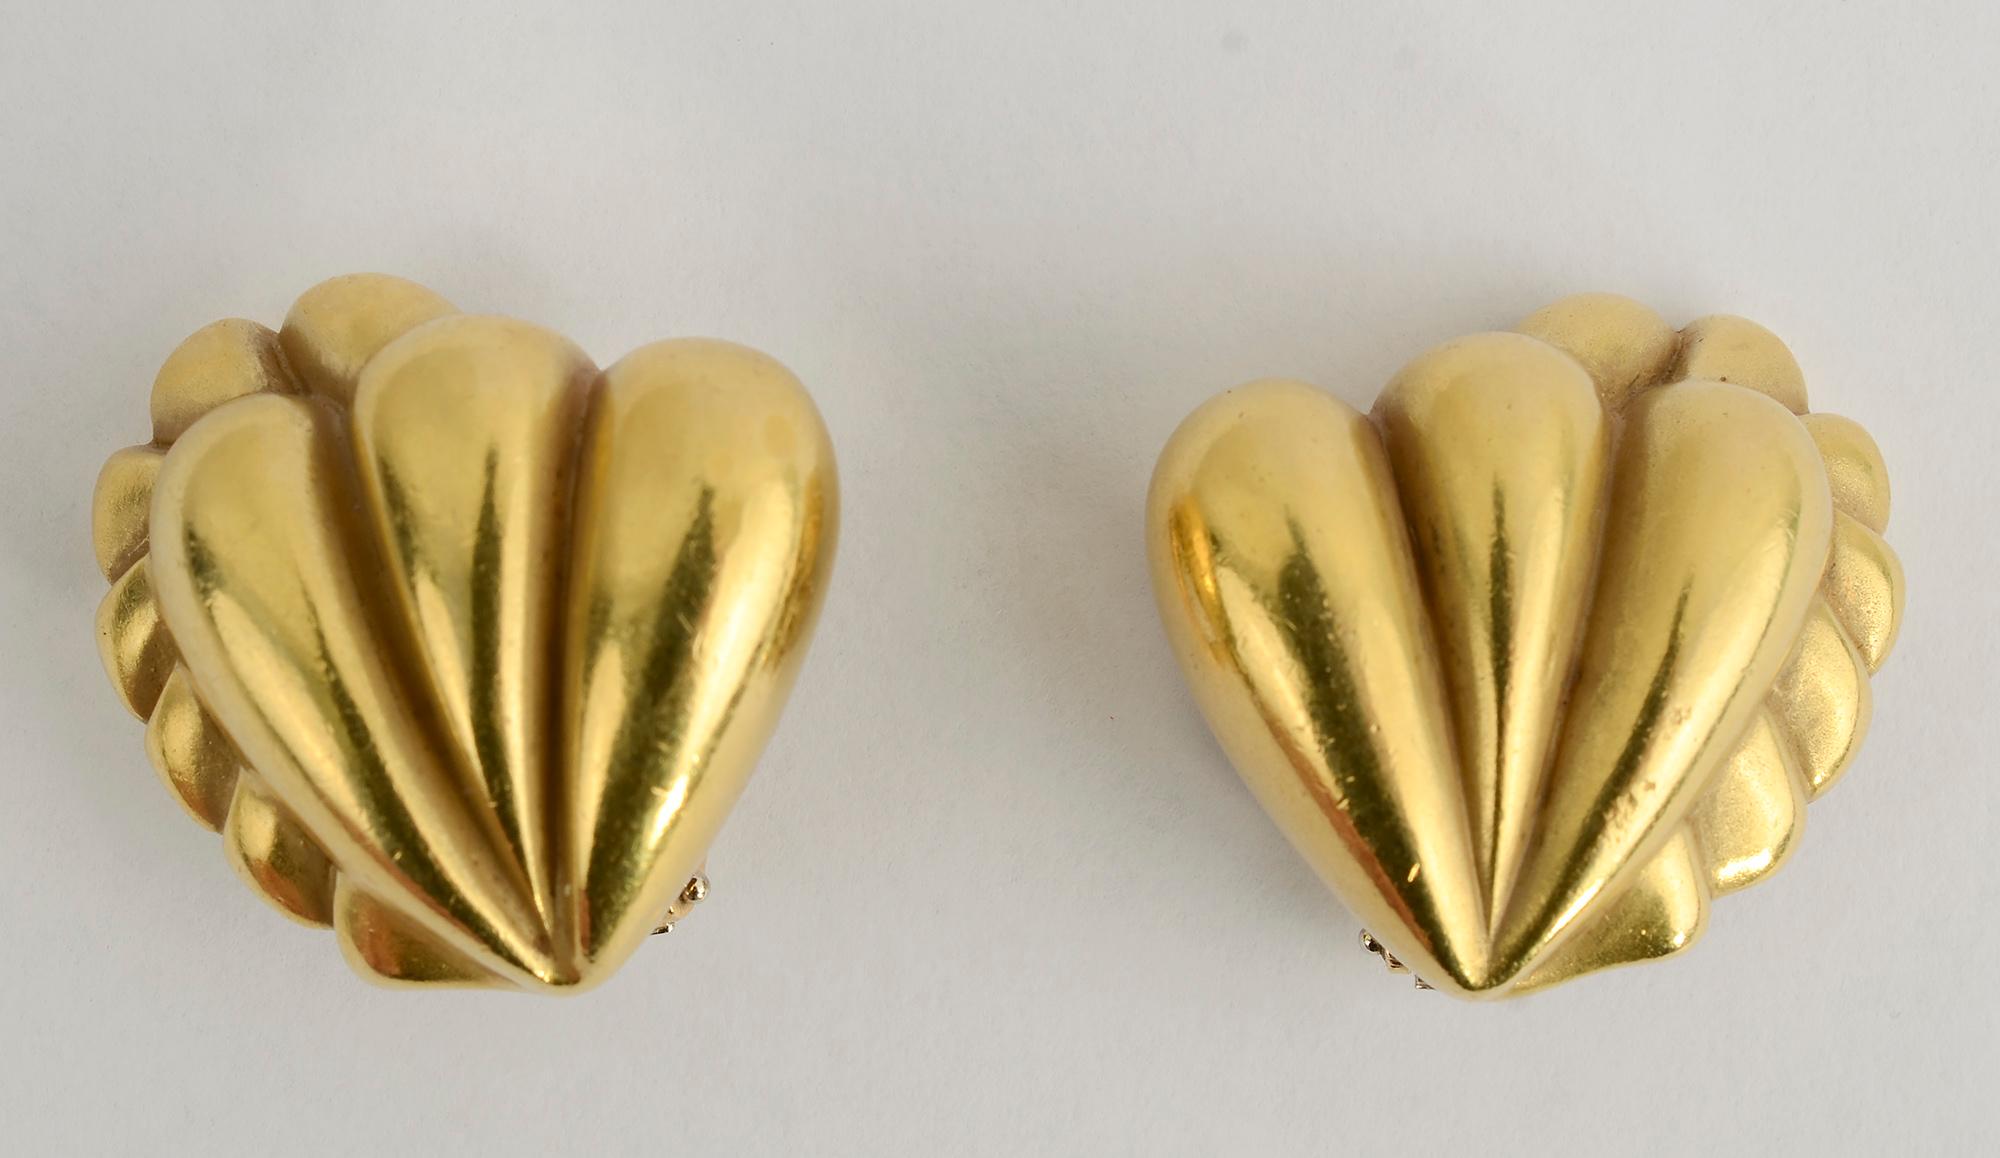 Grandes boucles d'oreilles en or 18 carats de Barry KIESELSTEIN-CORD qui sont des cœurs abstraits et lobés.
Les dos sont des clips qui peuvent être transformés en poteaux.